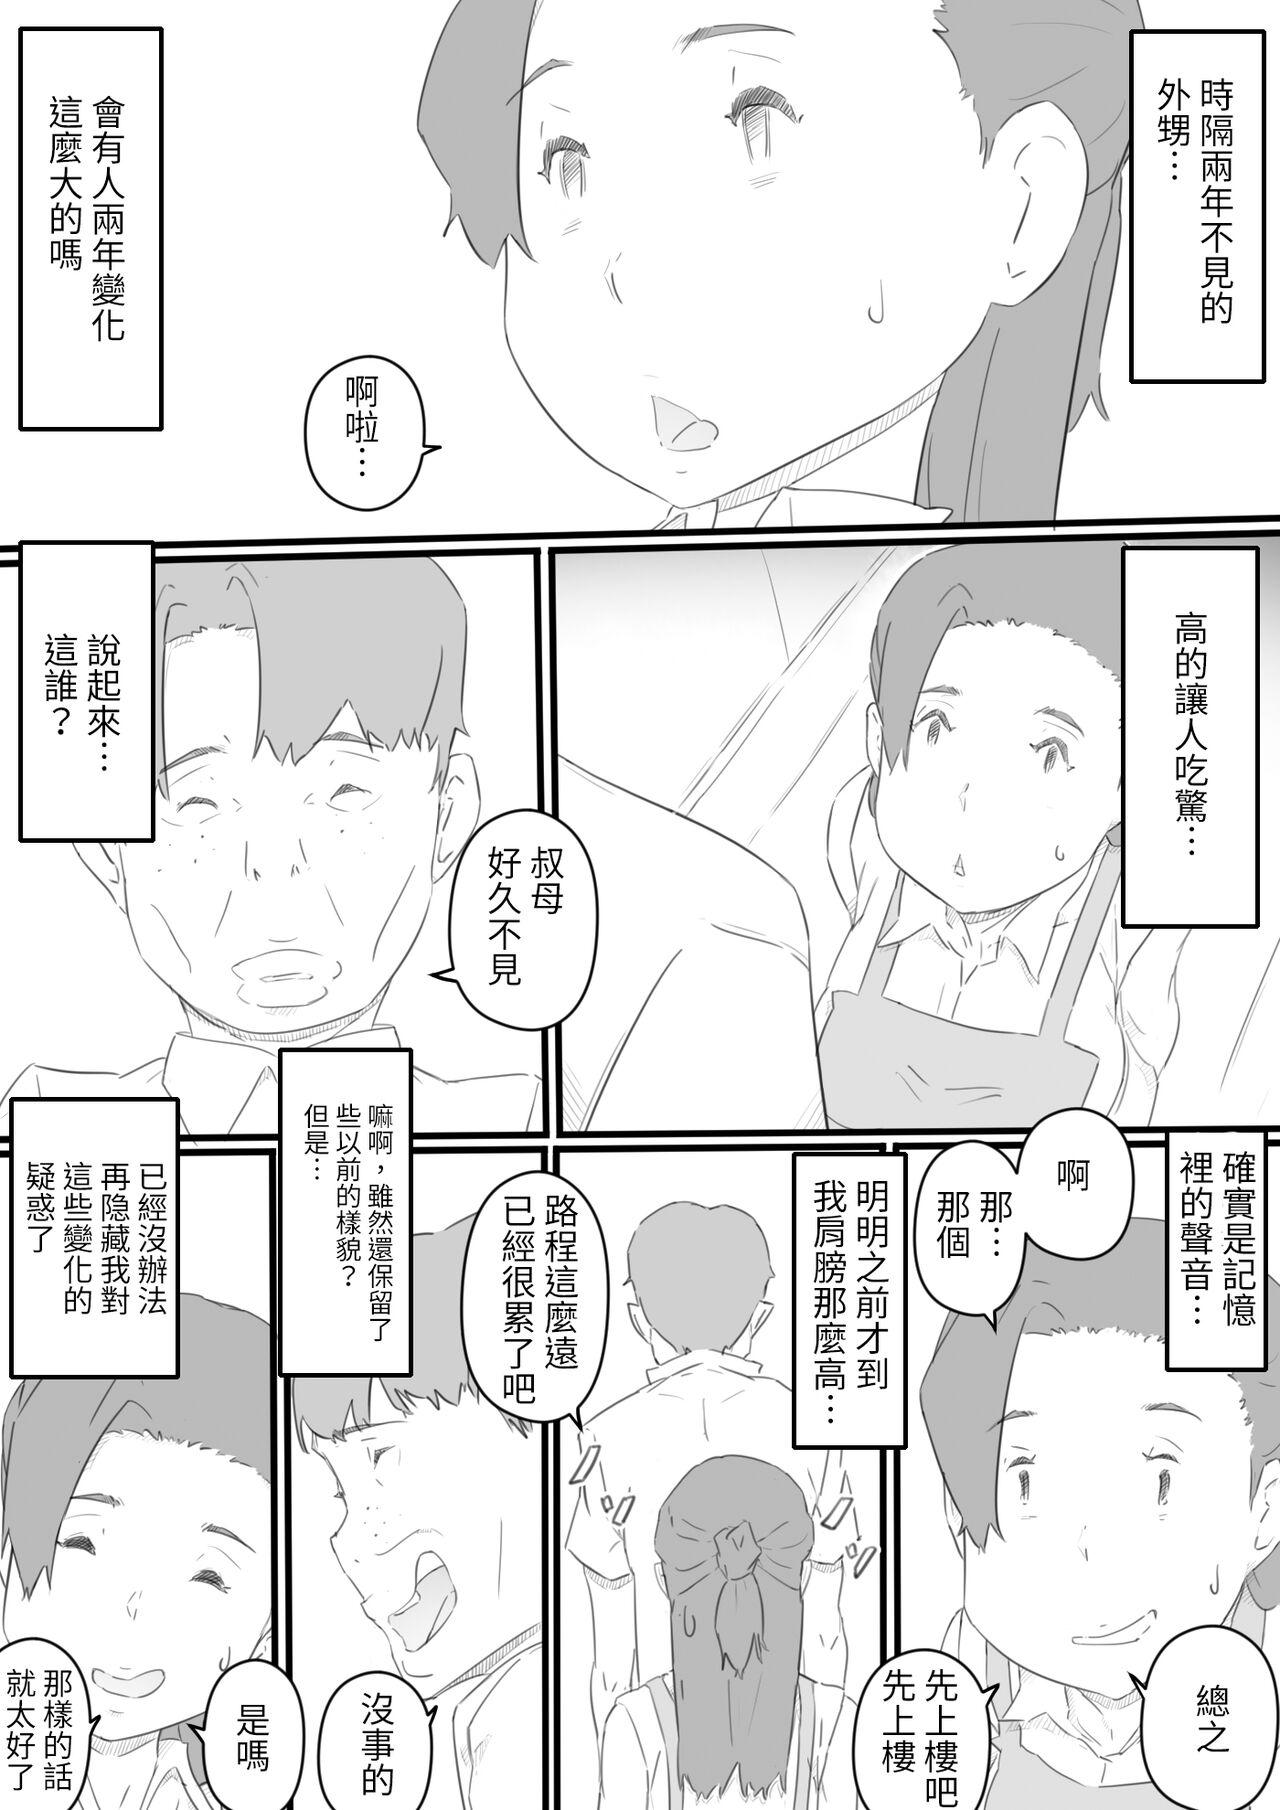 Spooning hi ki komo ri no oi xtu ko to三 nin no hitozuma‐ hito natu no omo i de…‐ Nuru Massage - Page 6